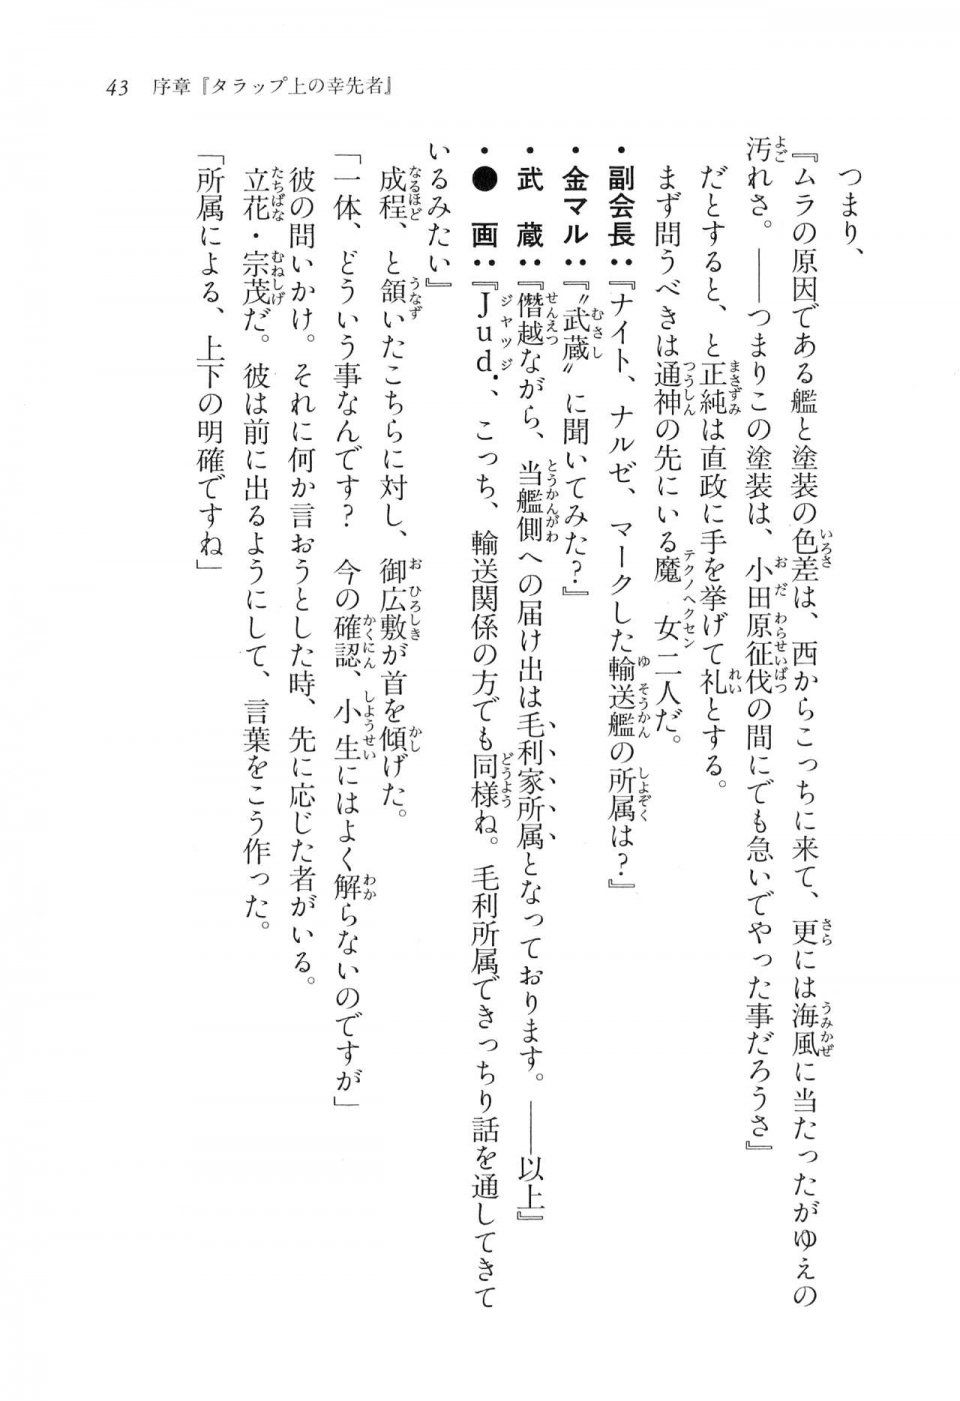 Kyoukai Senjou no Horizon LN Vol 16(7A) - Photo #43